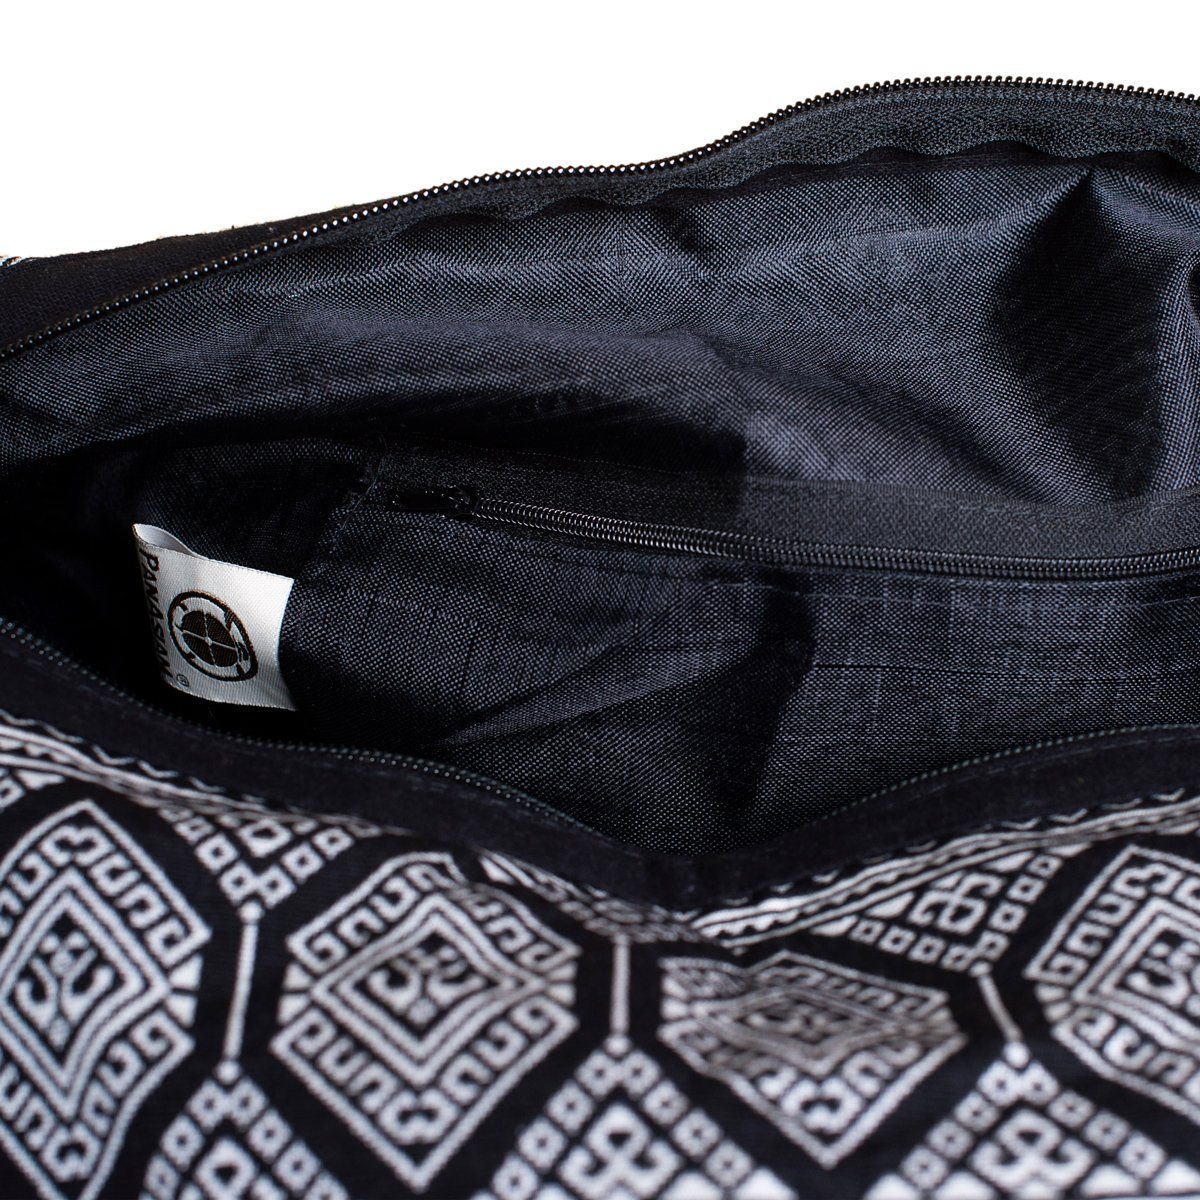 PANASIAM Schultertasche Designs Schwarz in fester aus gewebten Baumwolle Wickeltasche, oder Beuteltasche Yogatasche nutzbar Umhängetasche auch Handtasche Strandtasche als